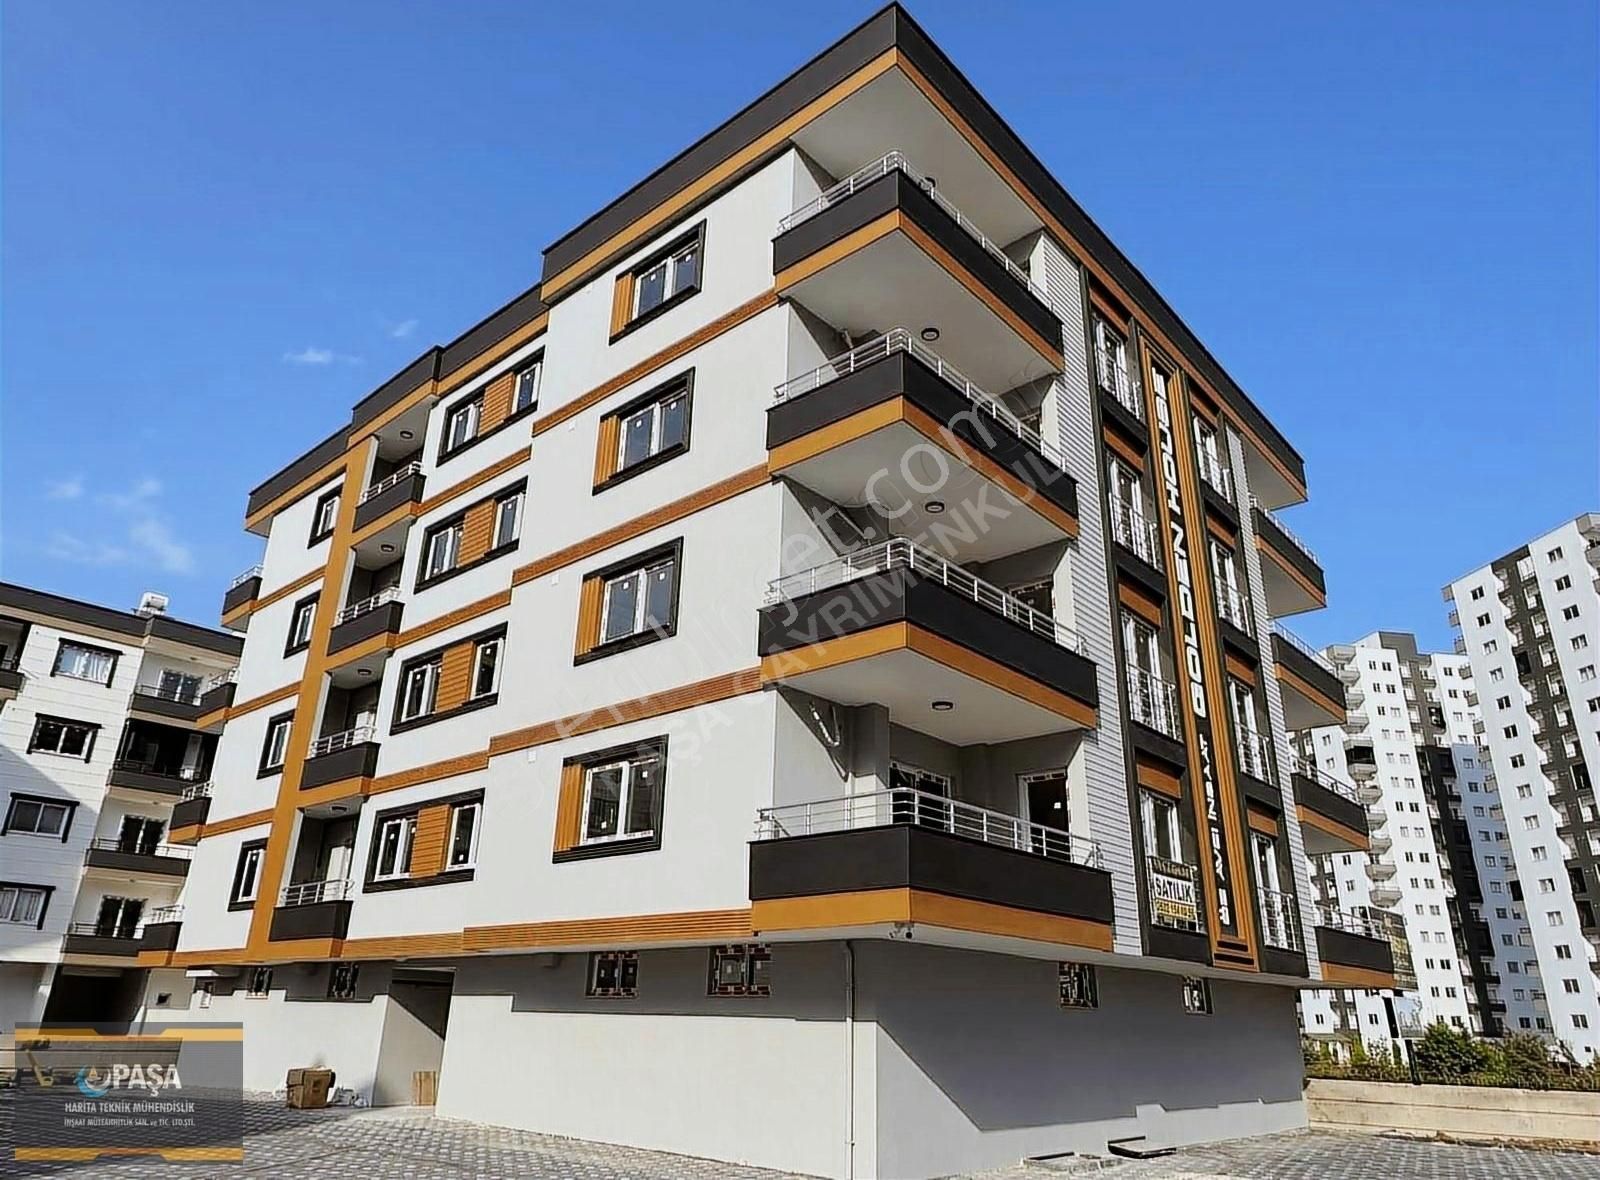 Tarsus Kavaklı Satılık Daire Golden House Sitesi'nde Satılık Daire Paşa GYRMKL'den %3.02 Kredi